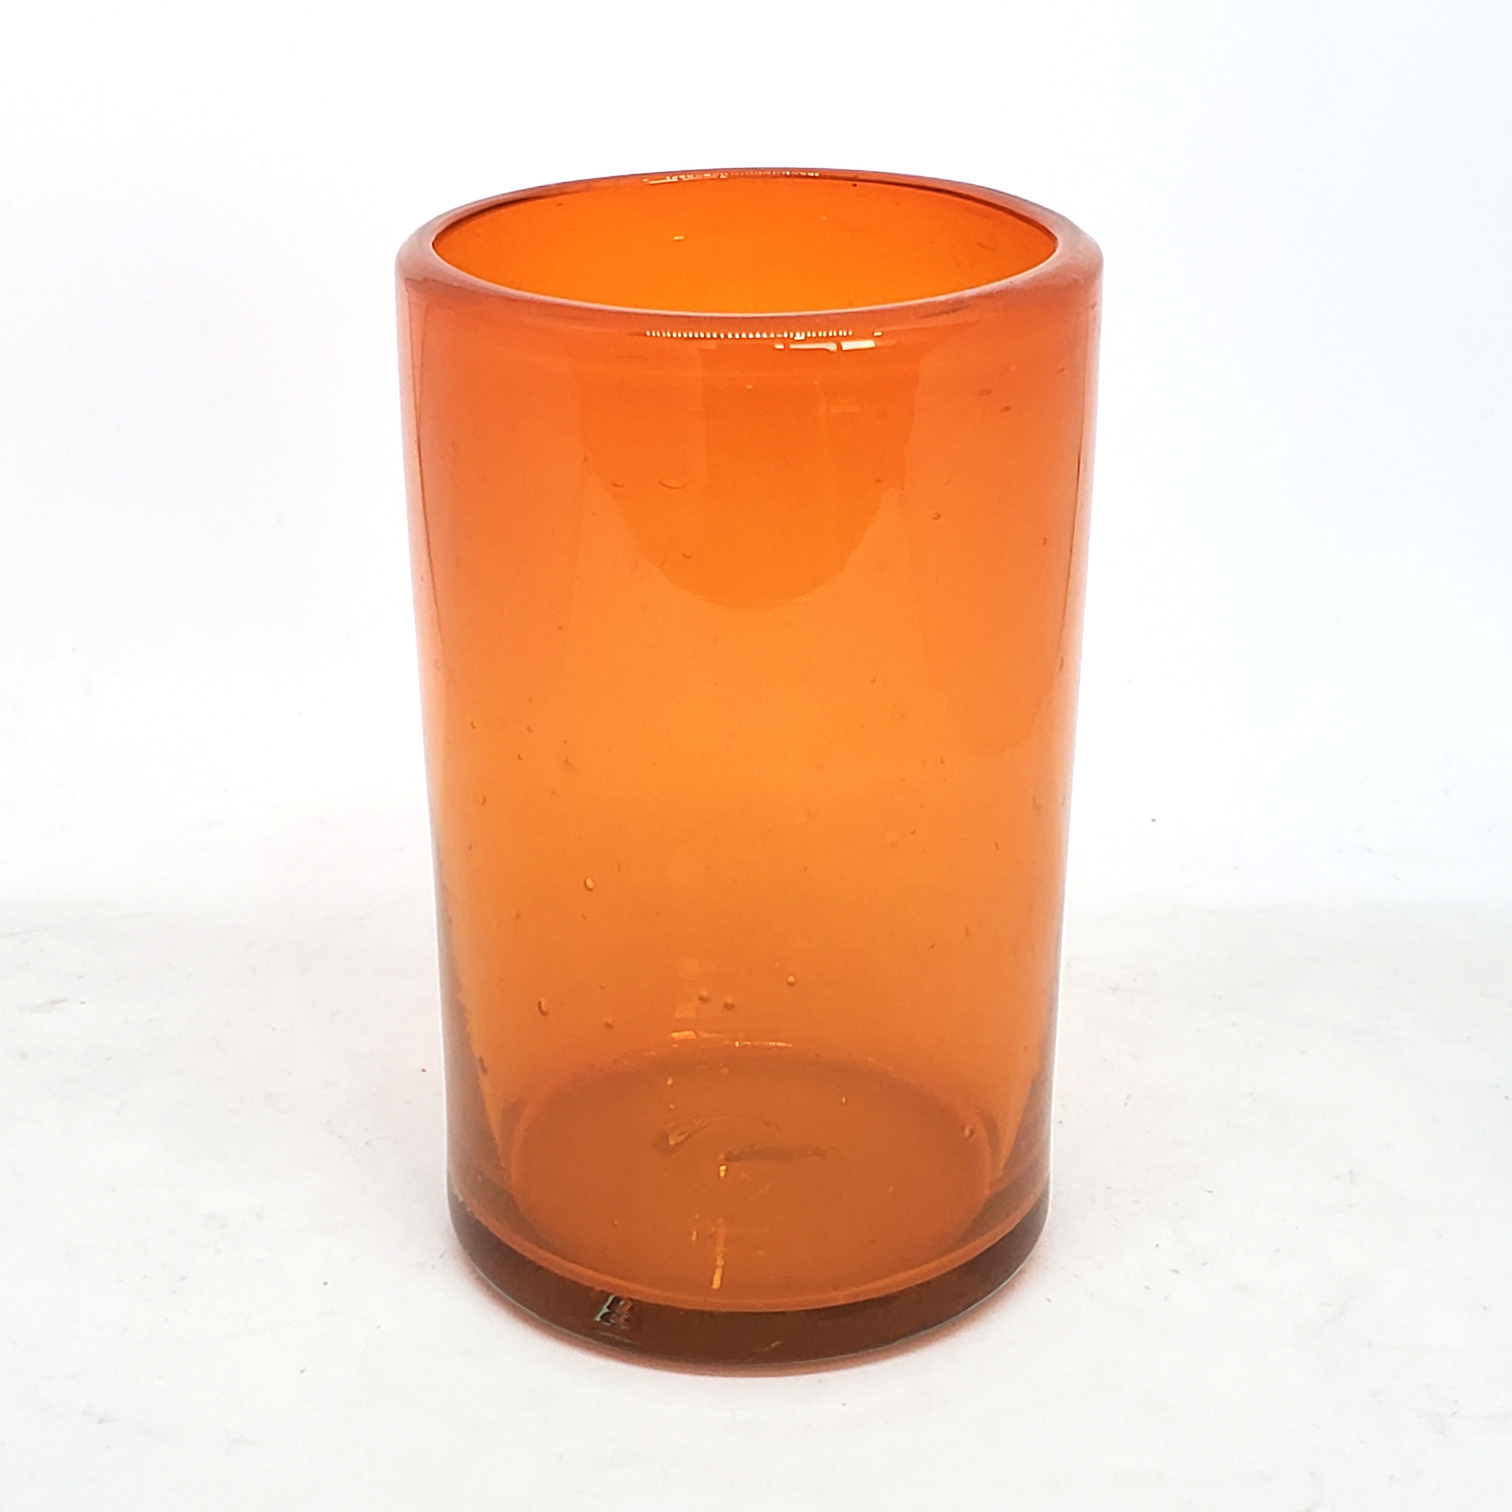 VIDRIO SOPLADO / Juego de 6 vasos grandes color naranja / Éstos artesanales vasos le darán un toque clásico a su bebida favorita.